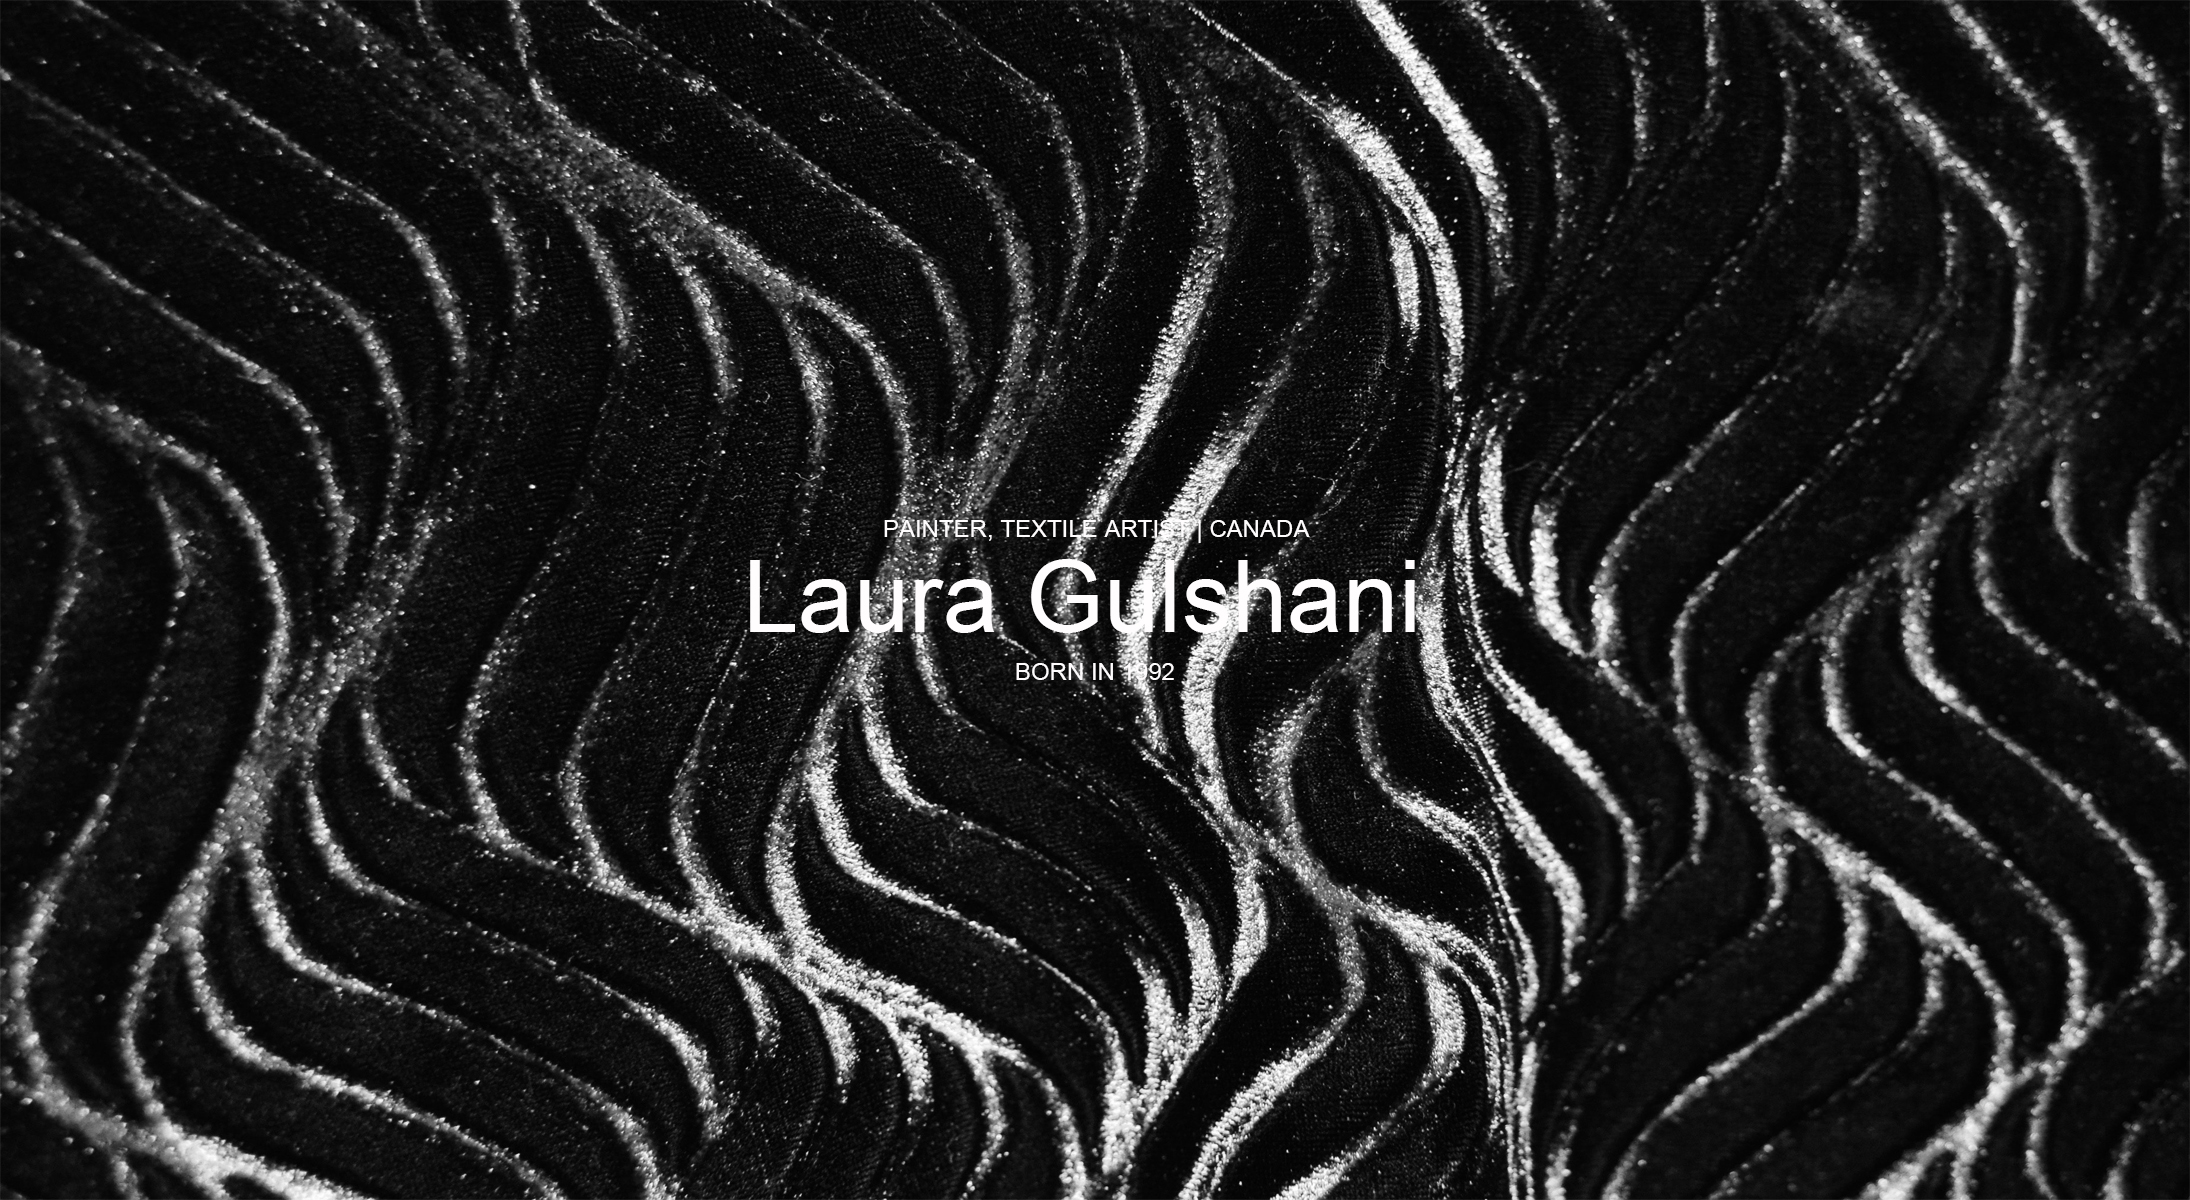 Laura Gulshani